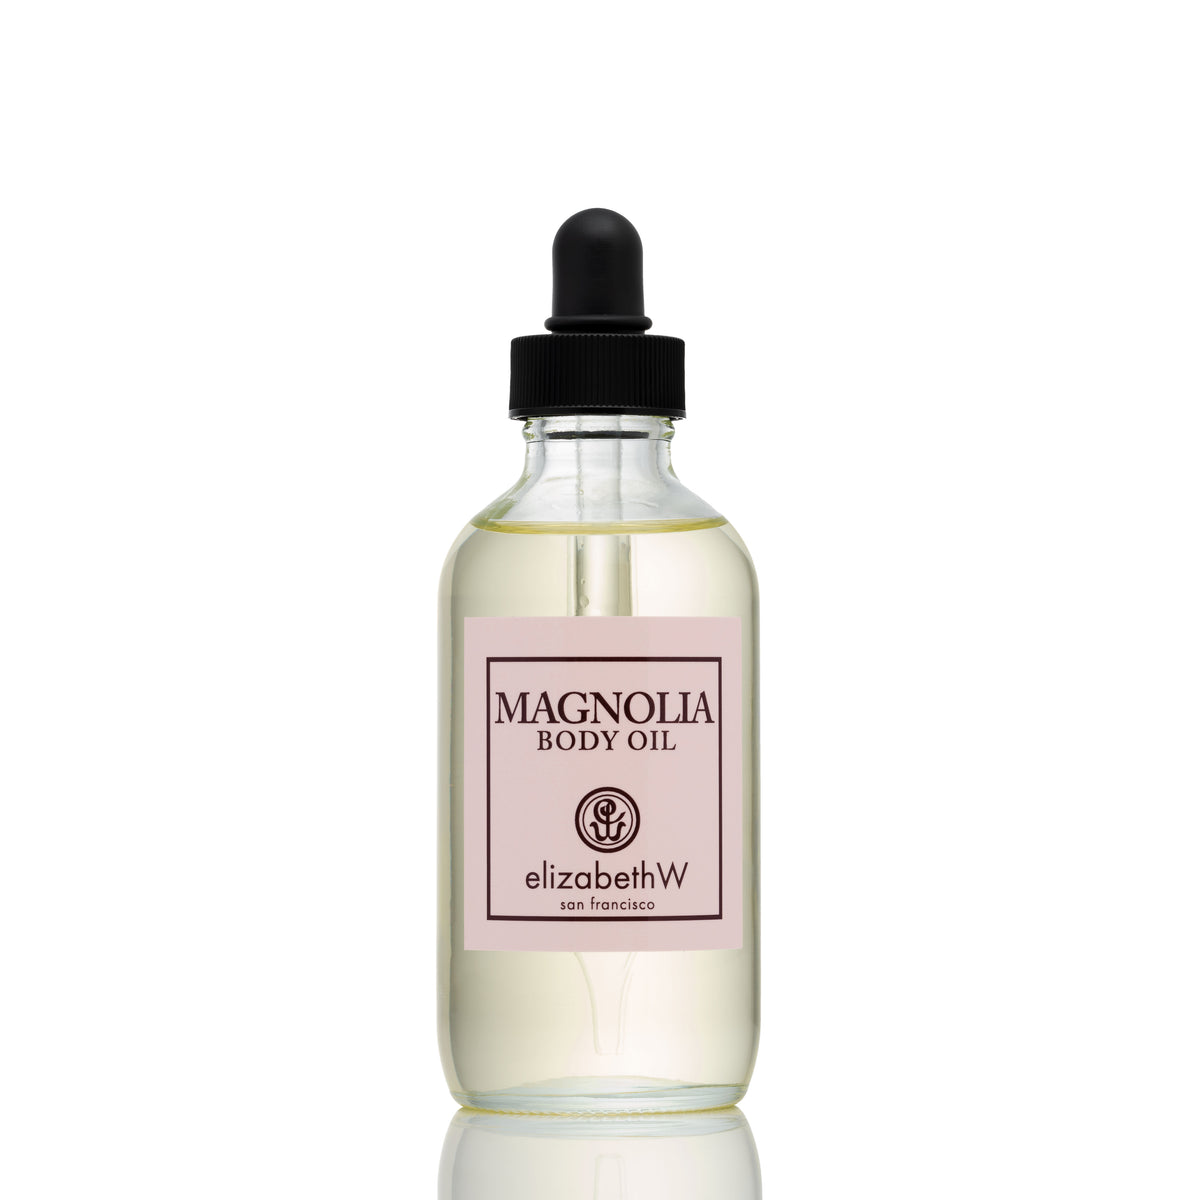 Magnolia Body Oil